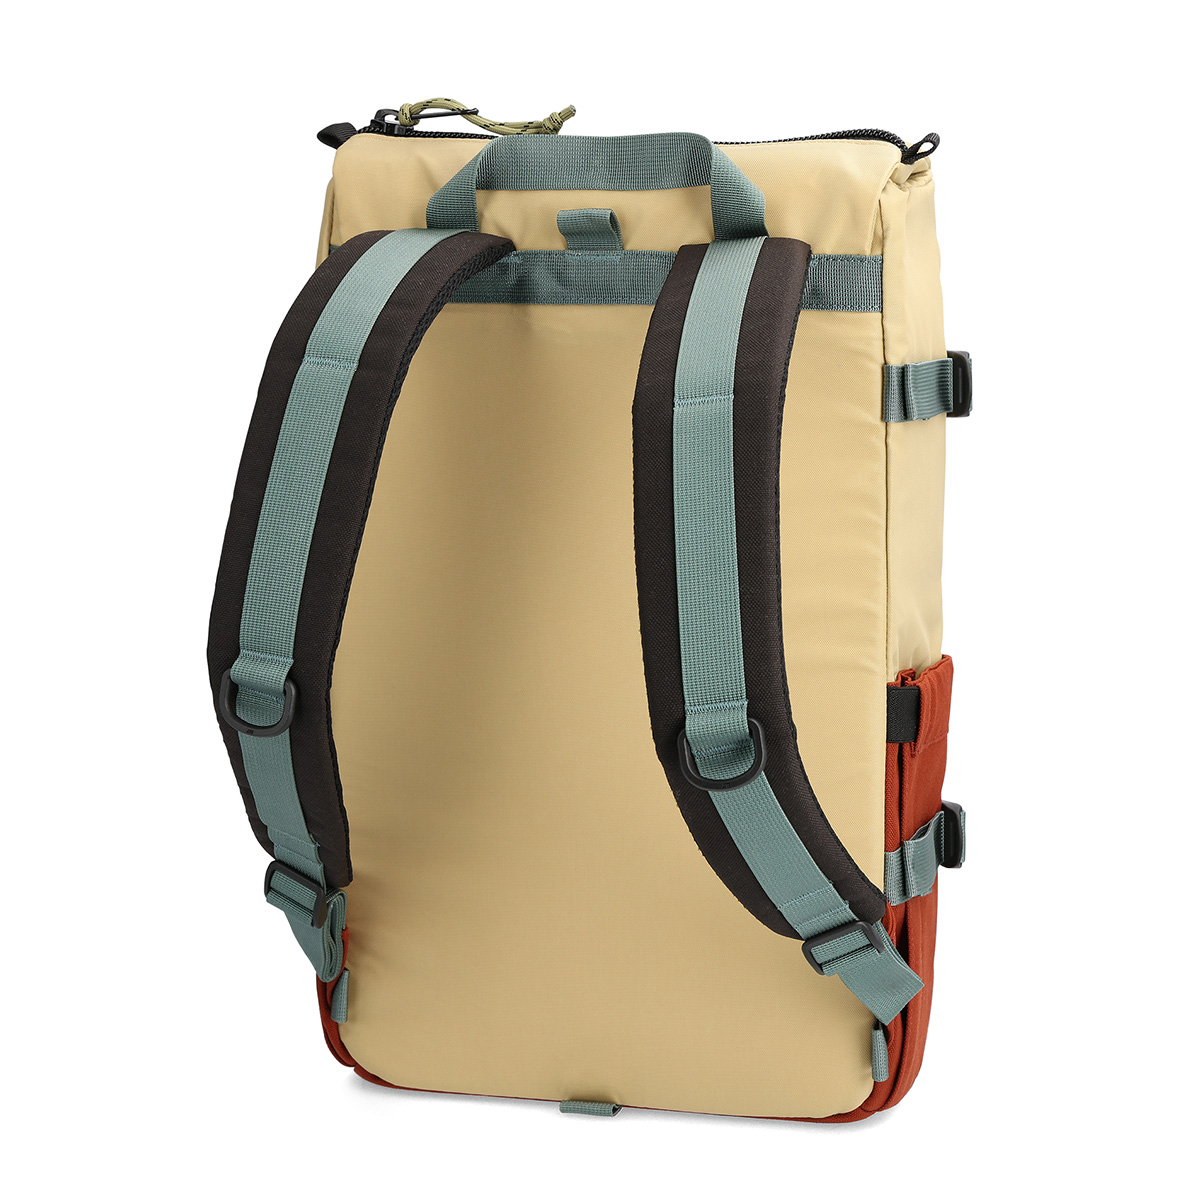 Topo Designs Rover Pack Classic Sahara/Fire Brick, der ideale Rucksack für den täglichen Gebrauch